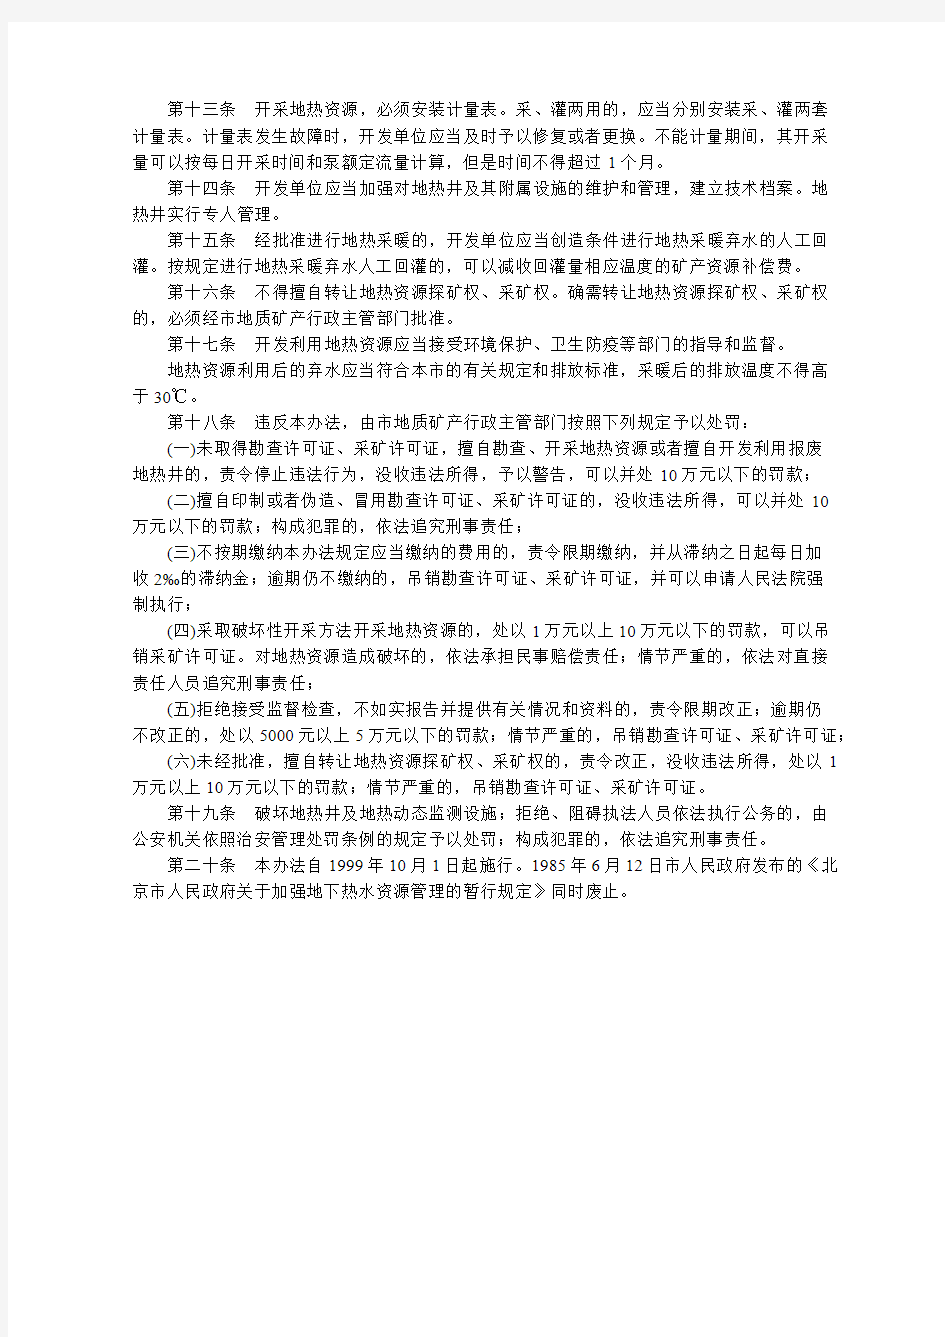 【全文】《北京市地热资源管理办法》(自2018年2月12日起施行)